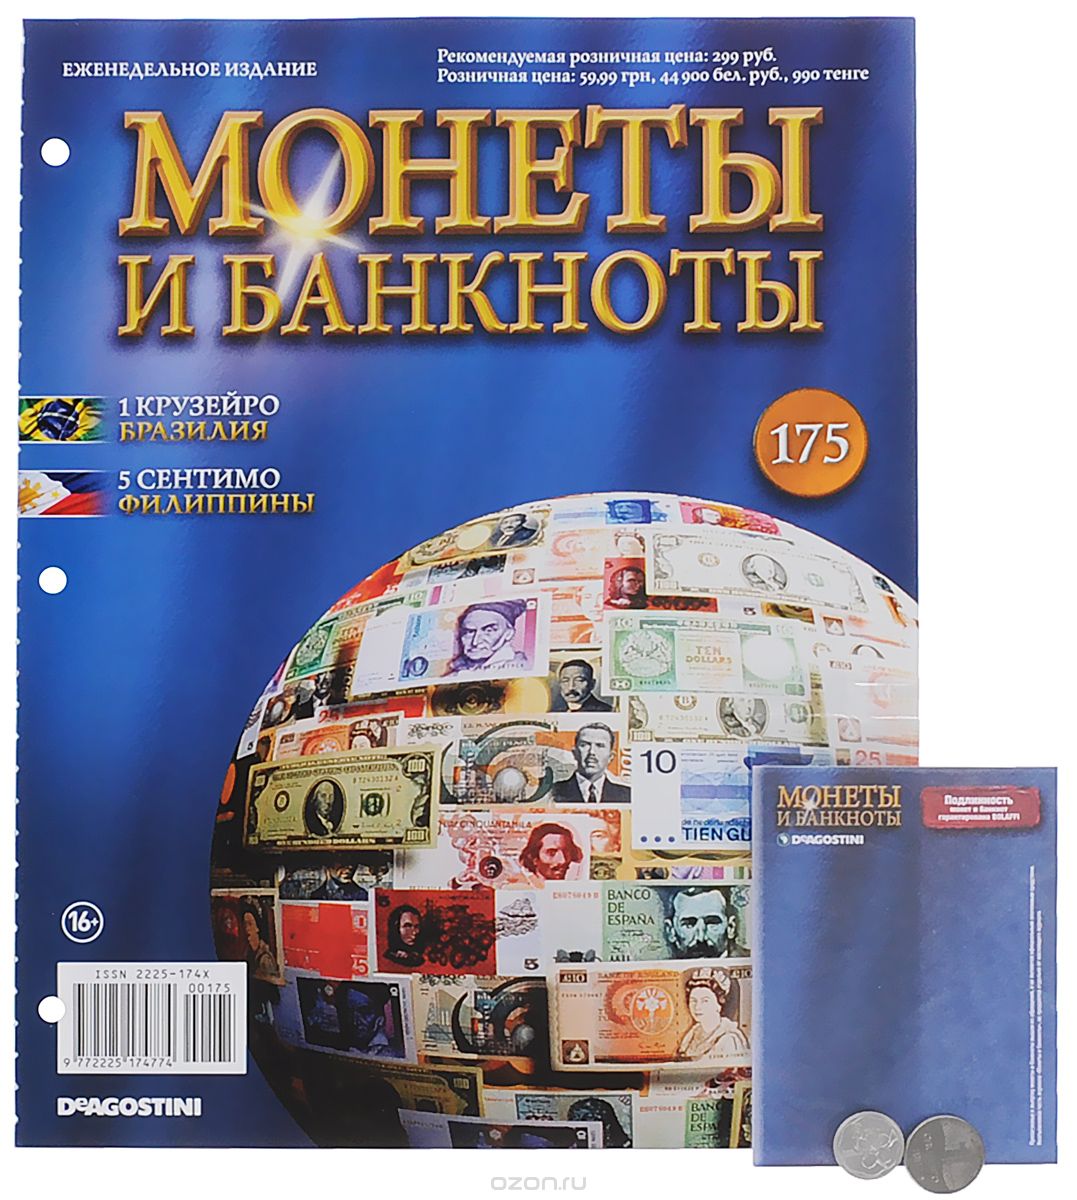 Журнал "Монеты и банкноты" №175